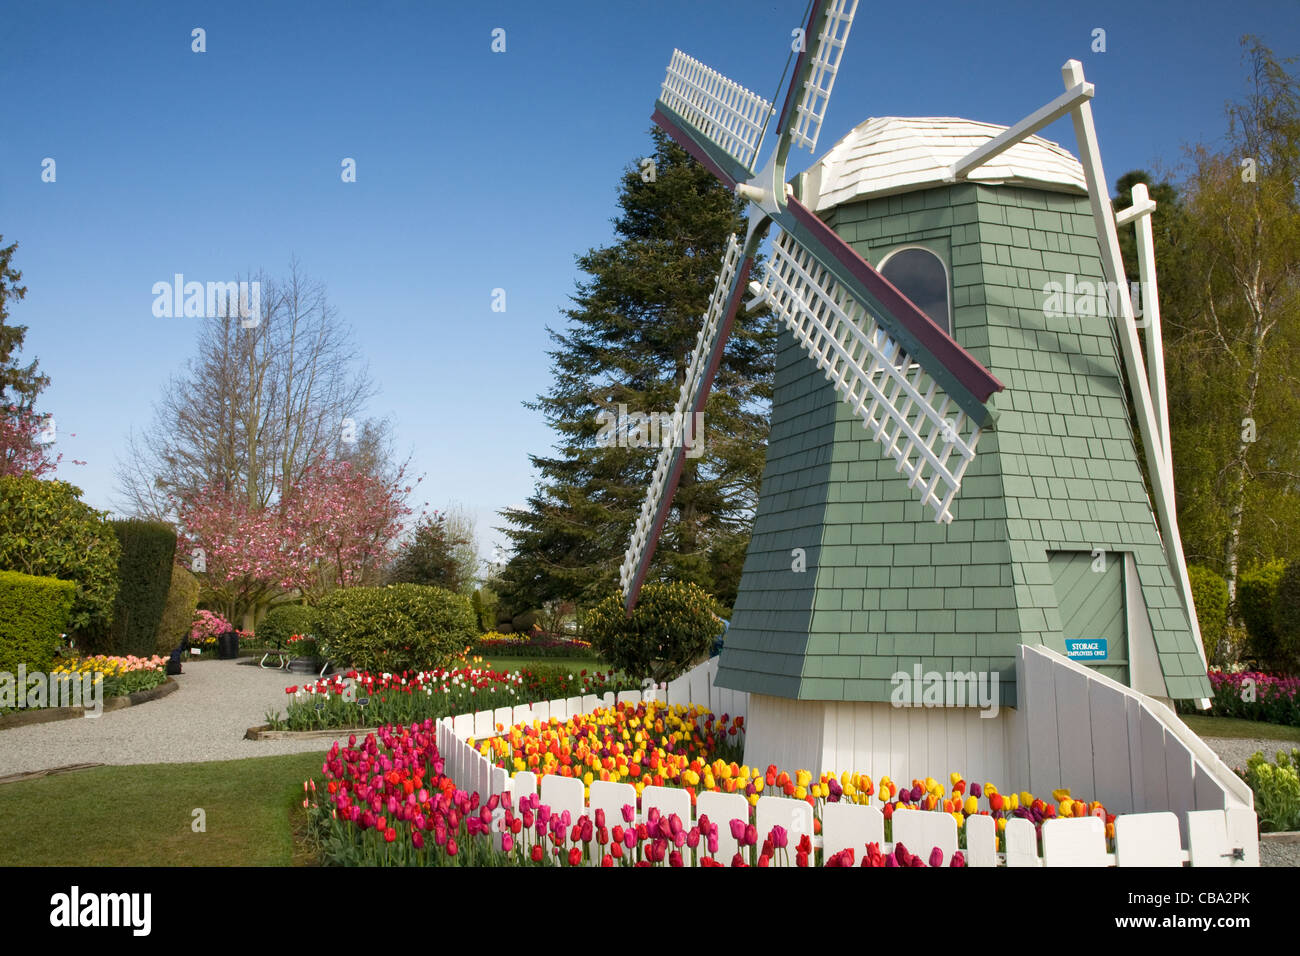 WASHINGTON - Windmühlen und Tulpen im Garten Roozengaarde Birne im Skagit Valley in der Nähe von Mount Vernon. Stockfoto